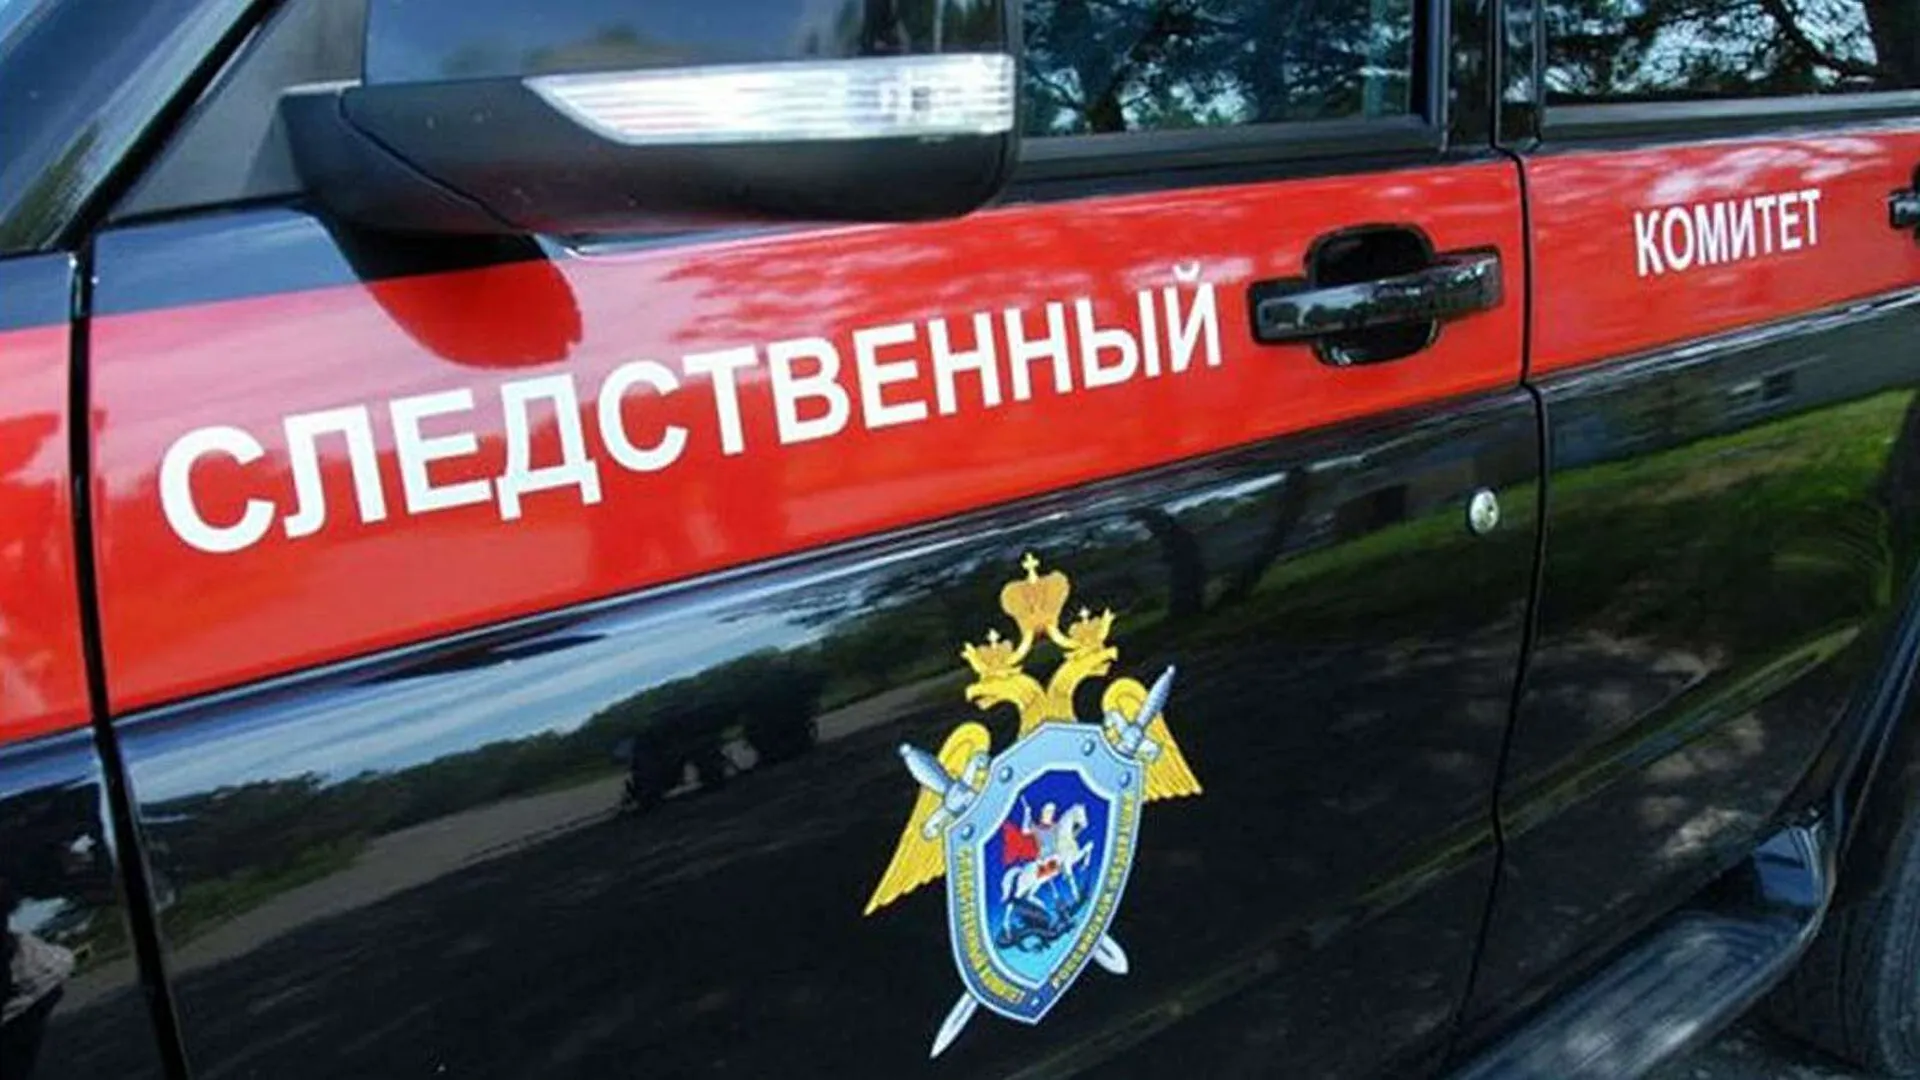 Уголовное дело о покушении на теракт возбудили после нападения подростка в Татарстане